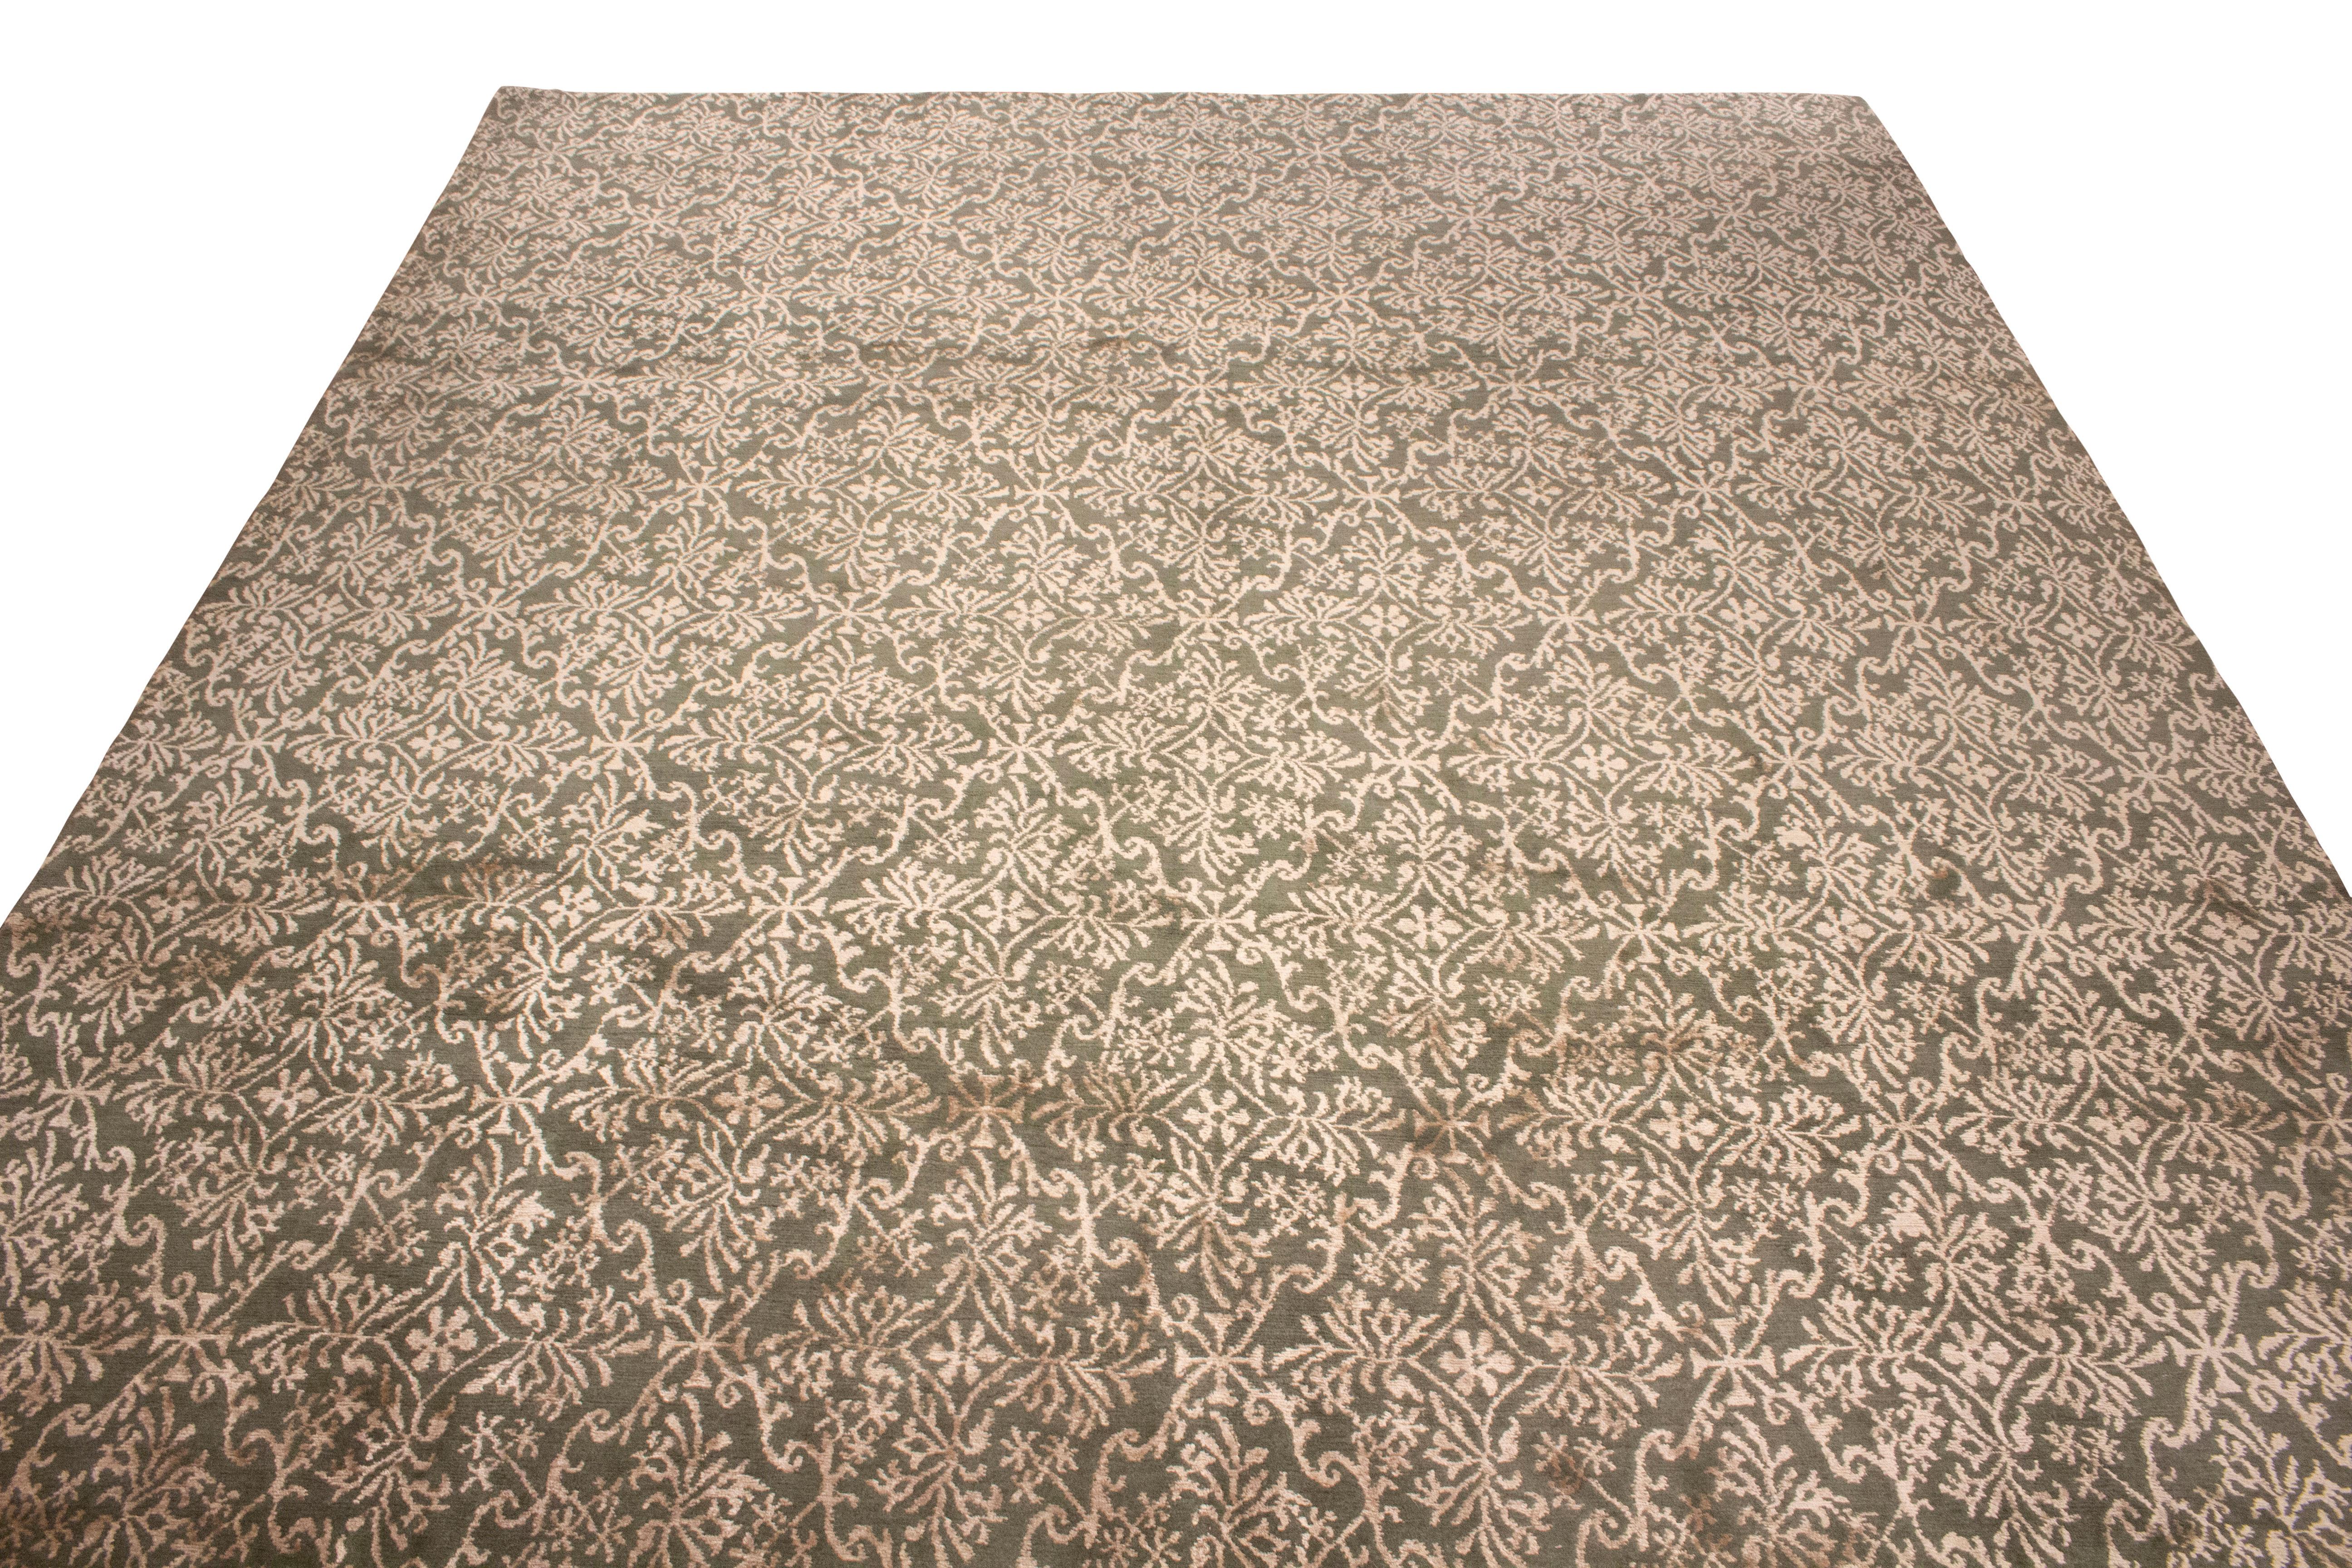 Noué à la main en laine et en soie, ce tapis de 8 x 10 de la collection de tapis européens de Rug & Kilim s'inspire d'un modèle de tapis espagnol affectueusement surnommé 